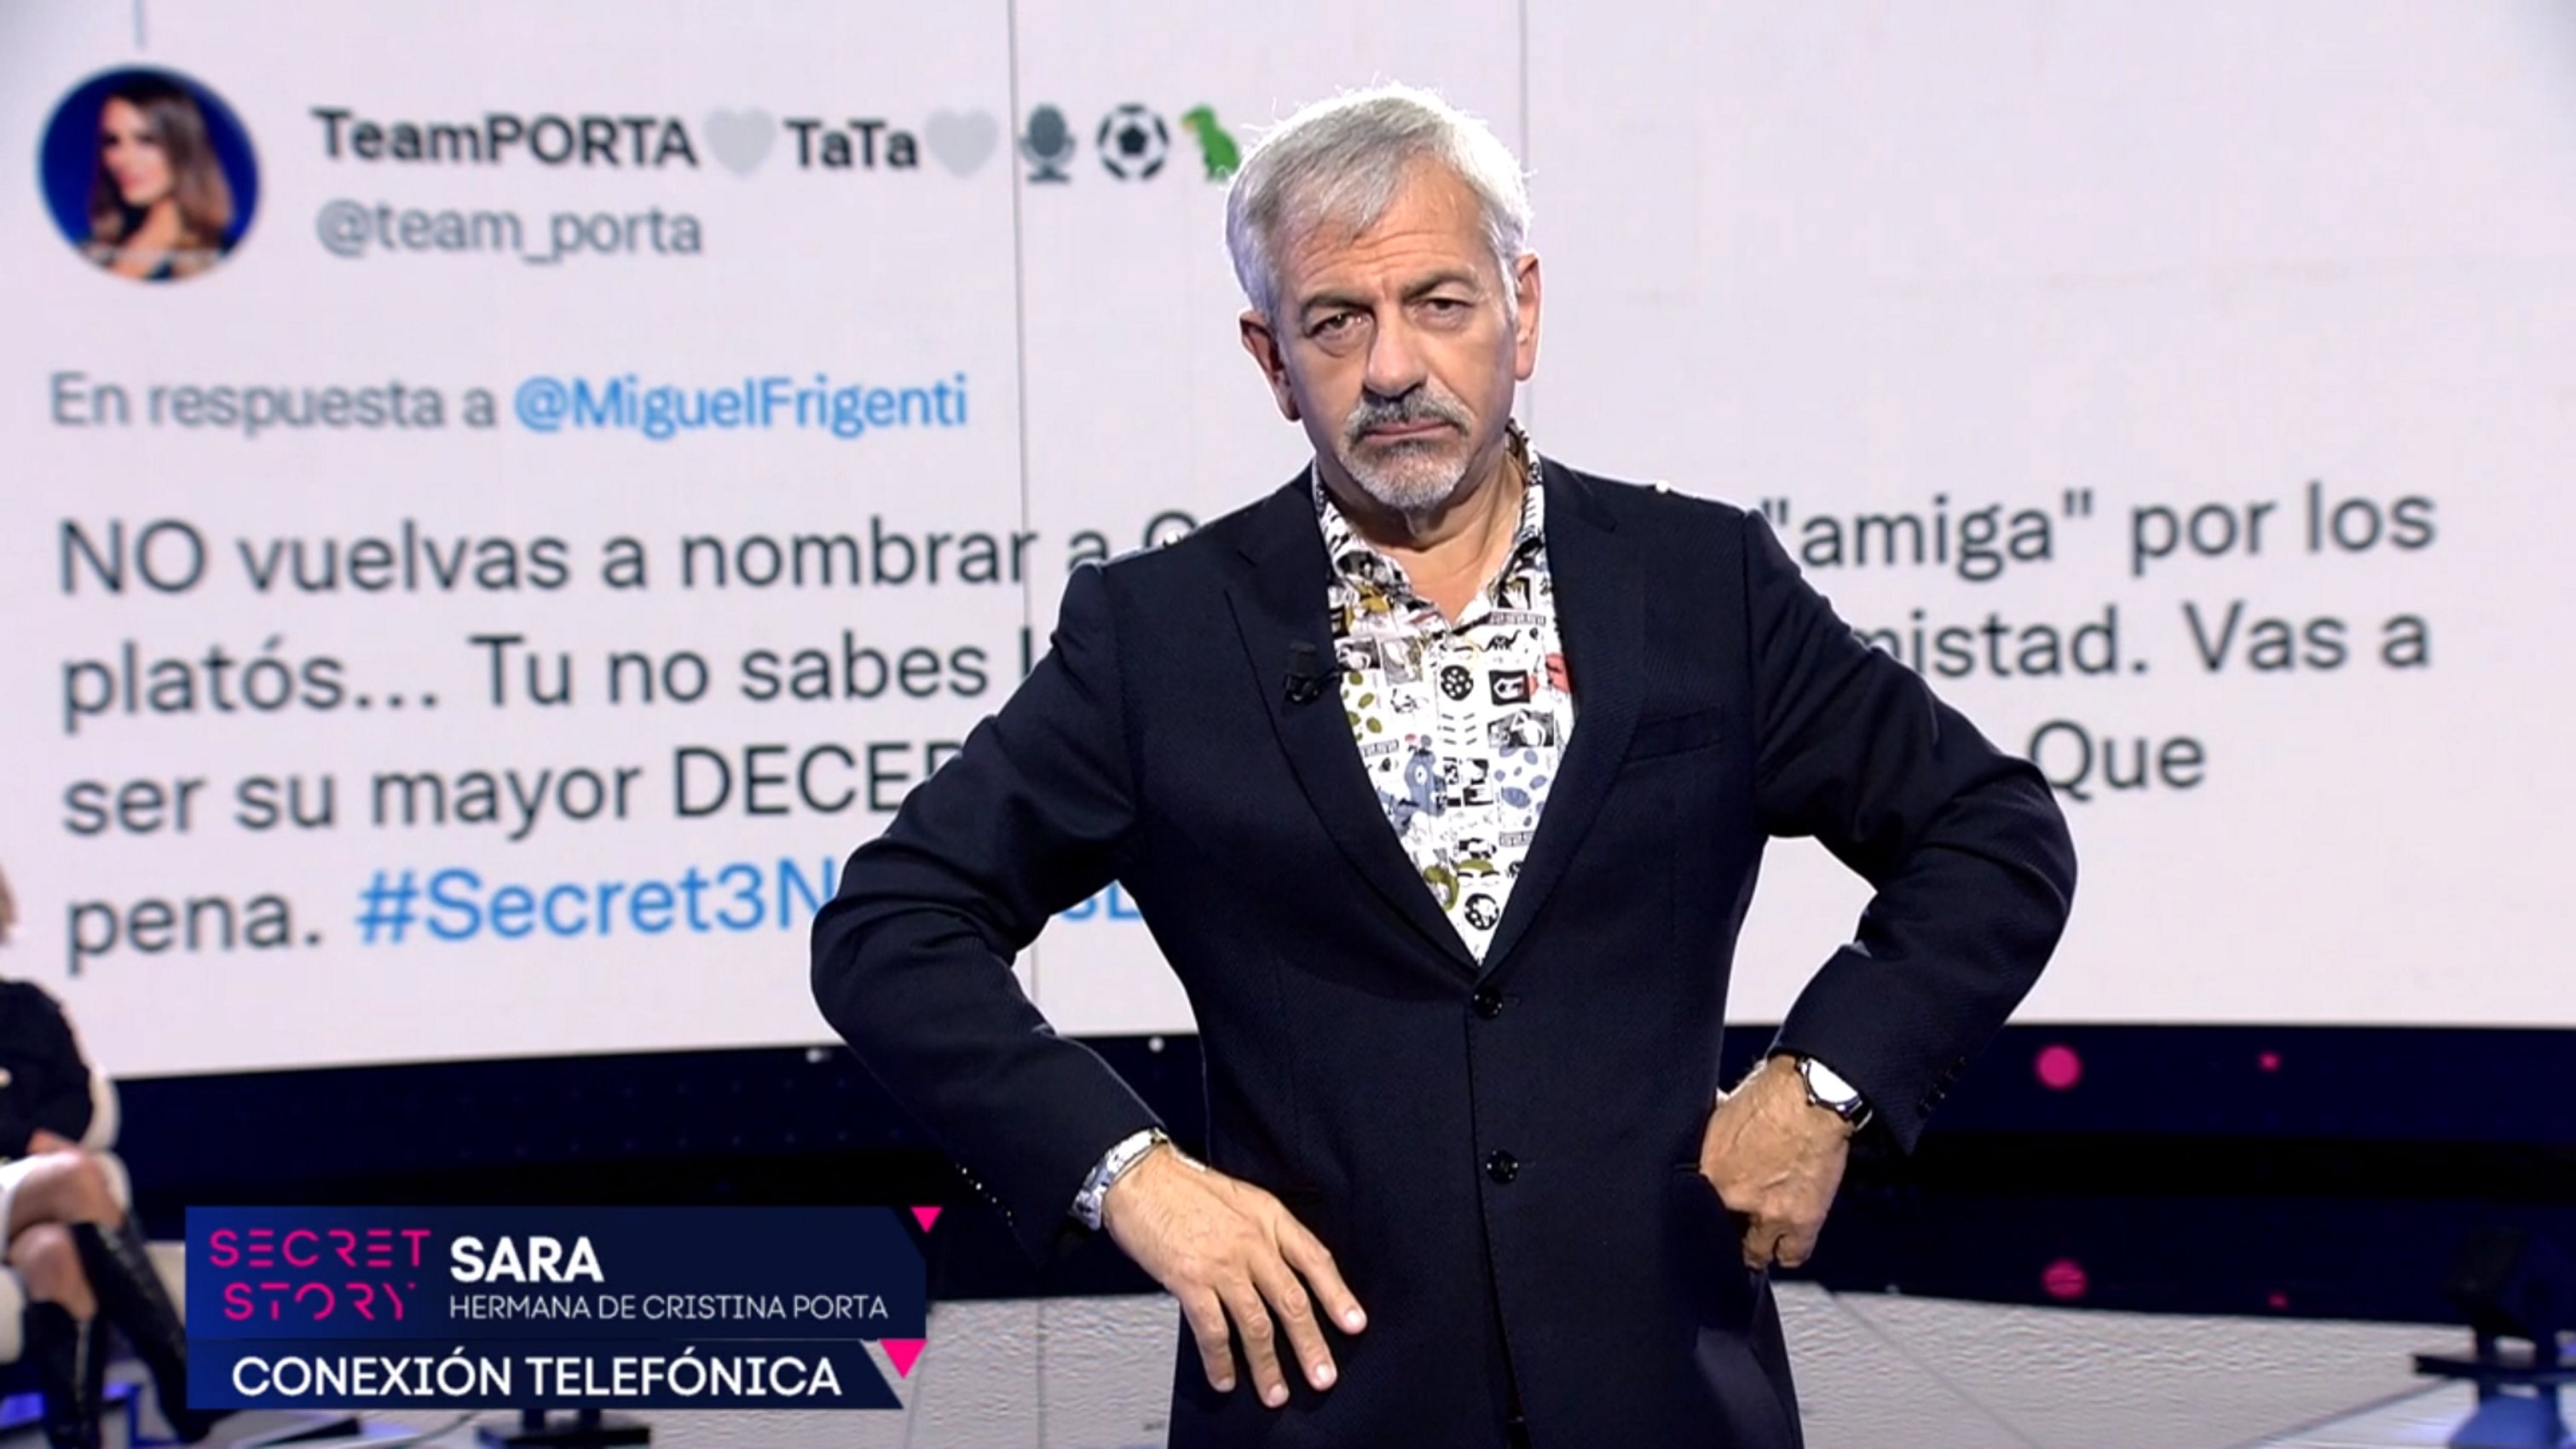 La ignorància escandalosa de 2 VIPS de Telecinco: Carlos Sobera no s'ho creu